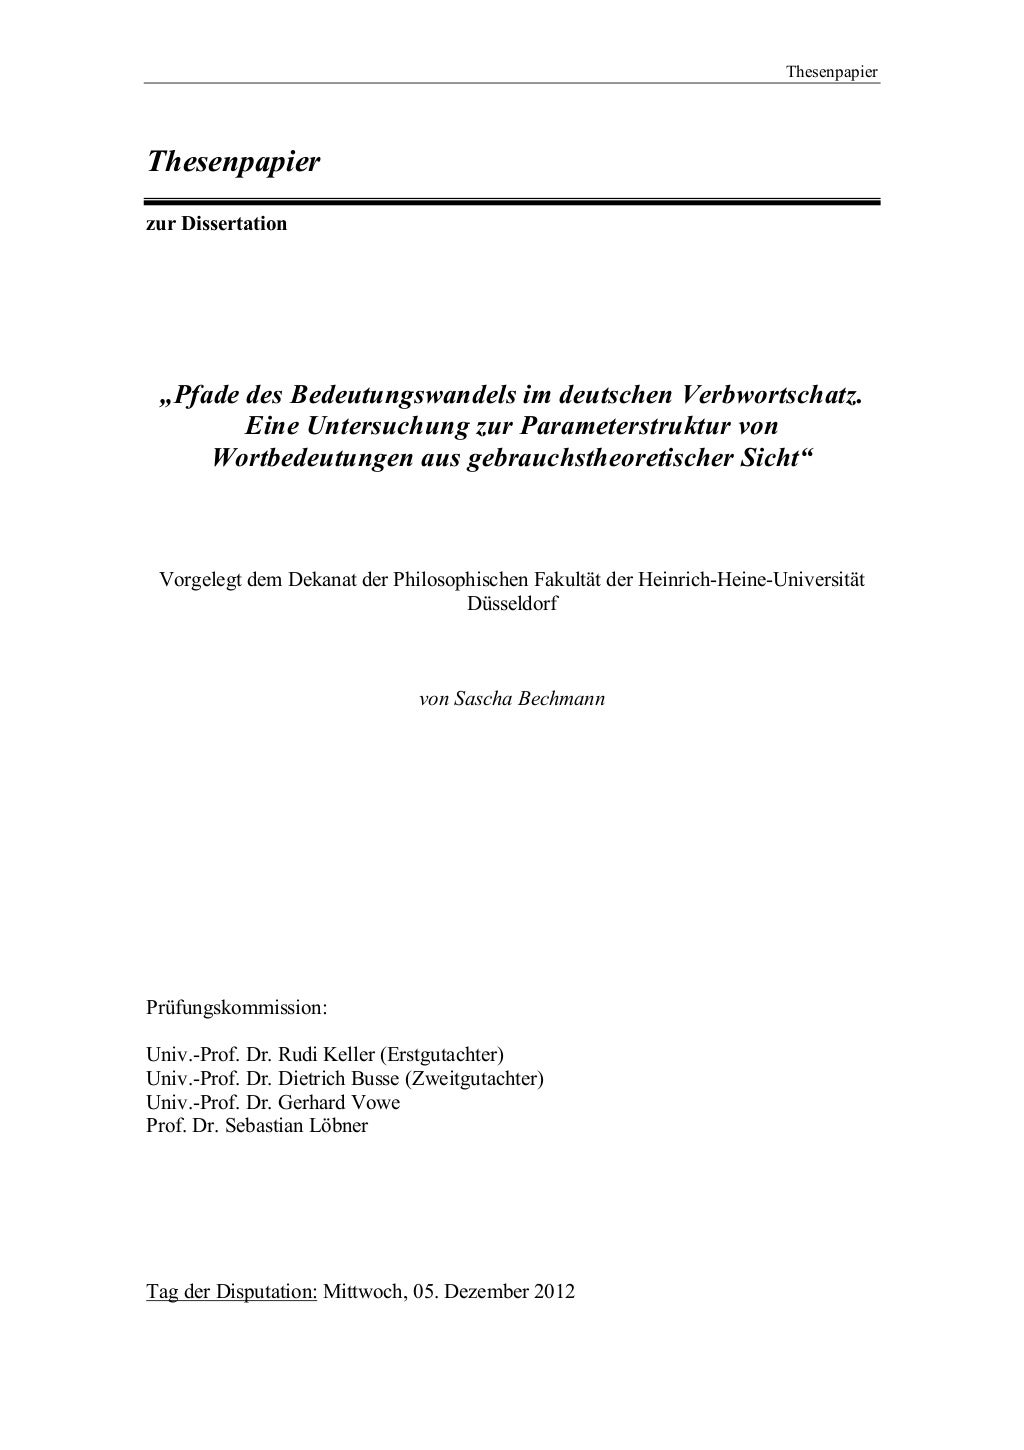 dissertation deutsch bedeutung